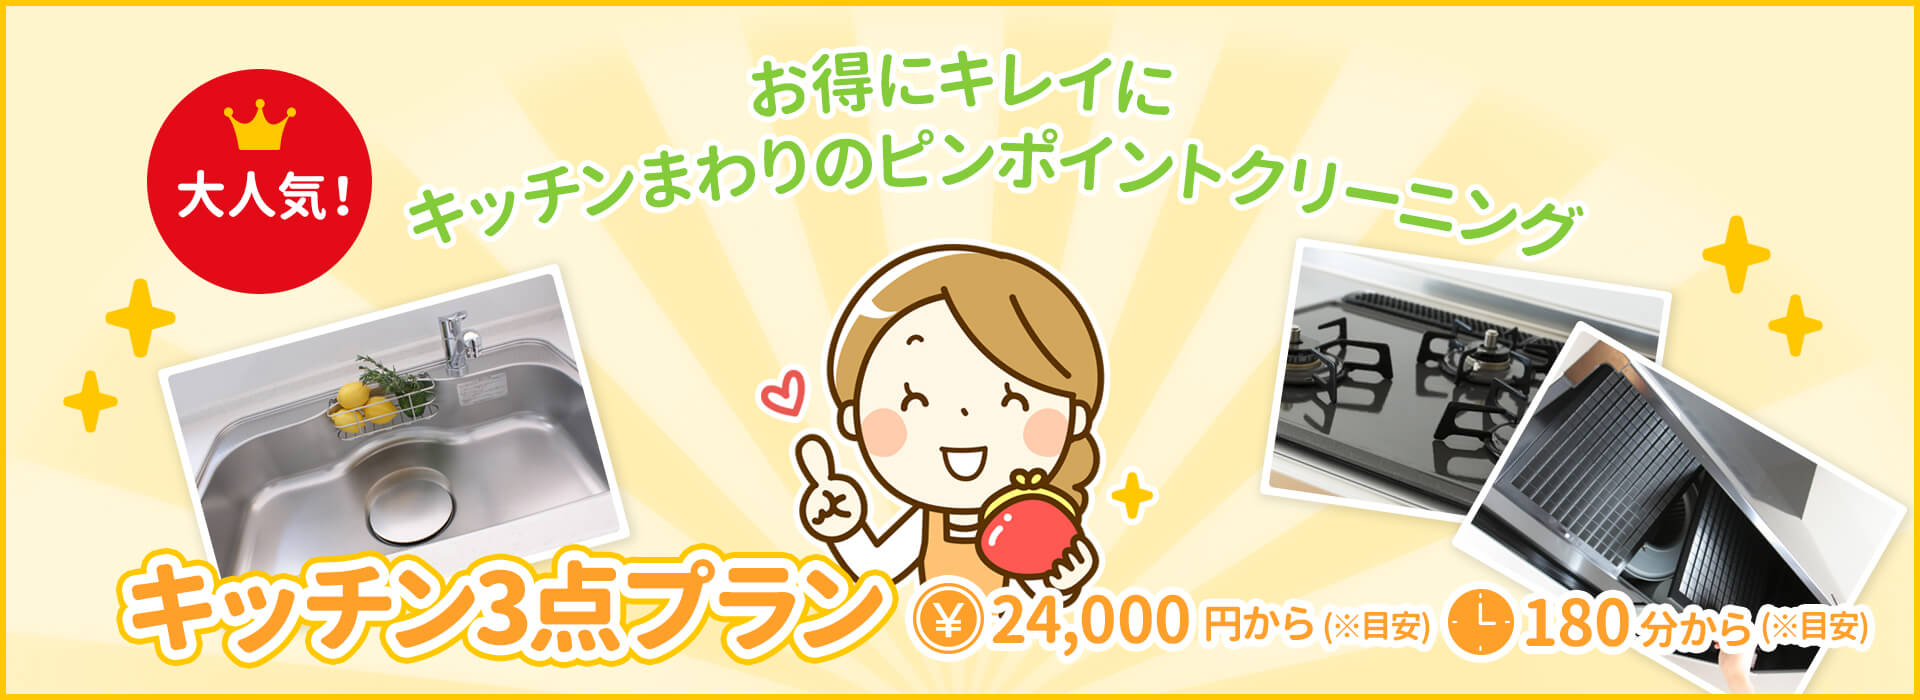 キッチン3点プラン ¥24,000から(目安) 240分